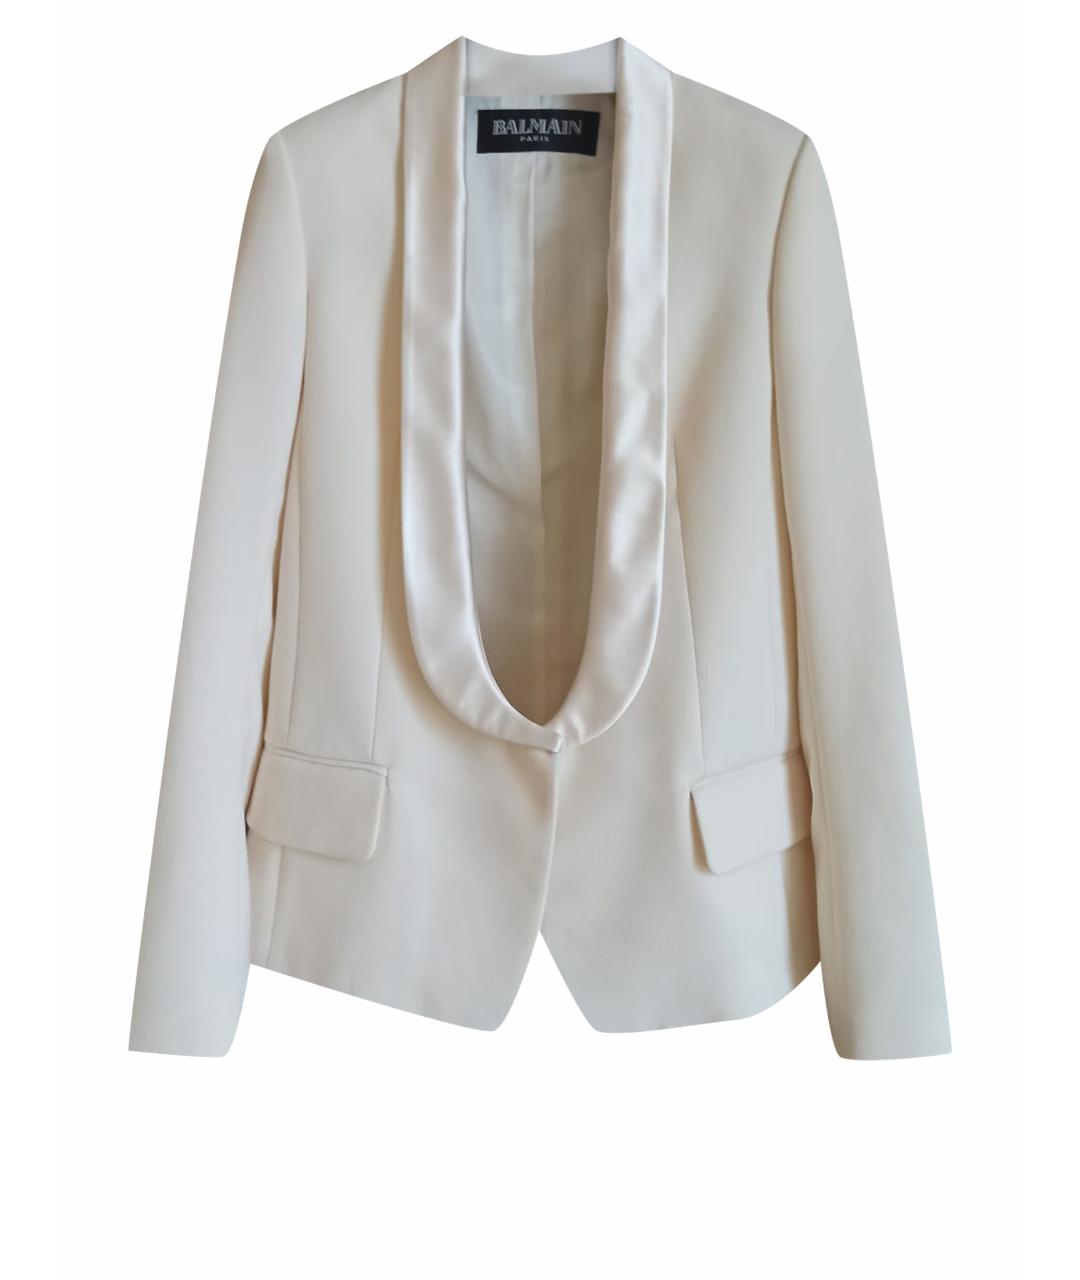 BALMAIN Белый шерстяной жакет/пиджак, фото 1